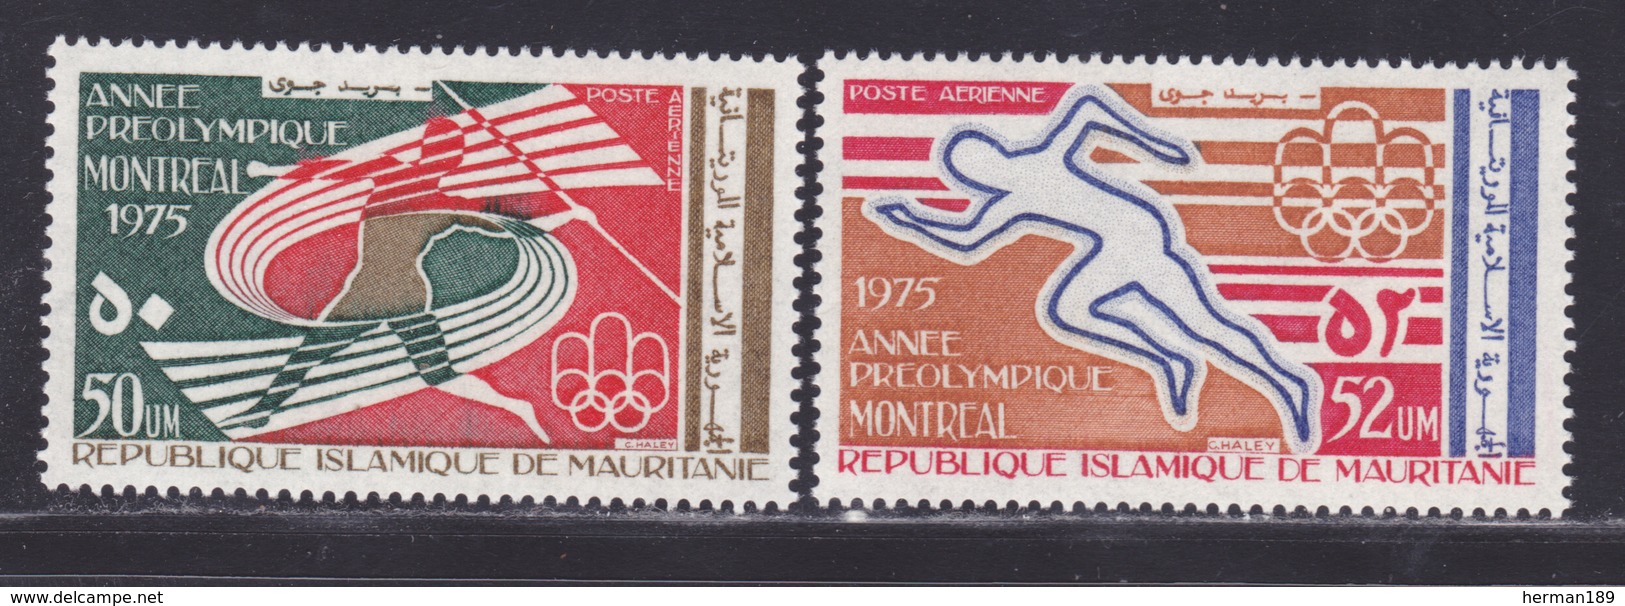 MAURITANIE AERIENS N°  159 & 160 ** MNH Neufs Sans Charnière, TB (D8182) Année Préolympique Montréal-1976 - Mauritanie (1960-...)